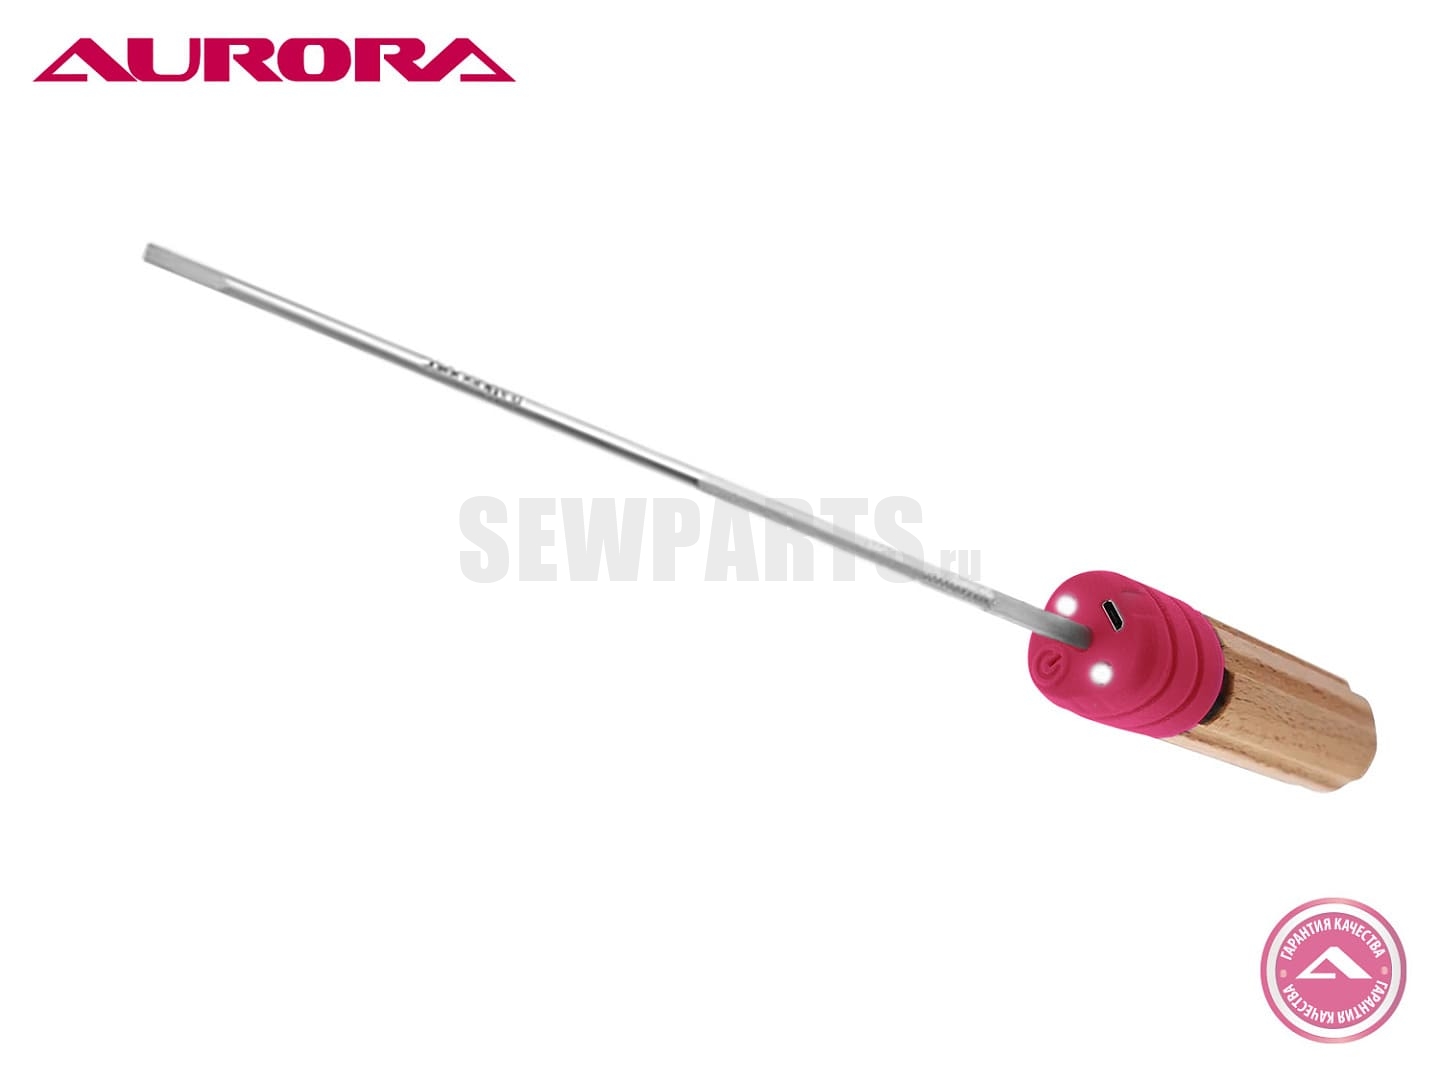 Отвёртка плоская для швейной машины Aurora SD12-6, 12 дюймов (305 мм)